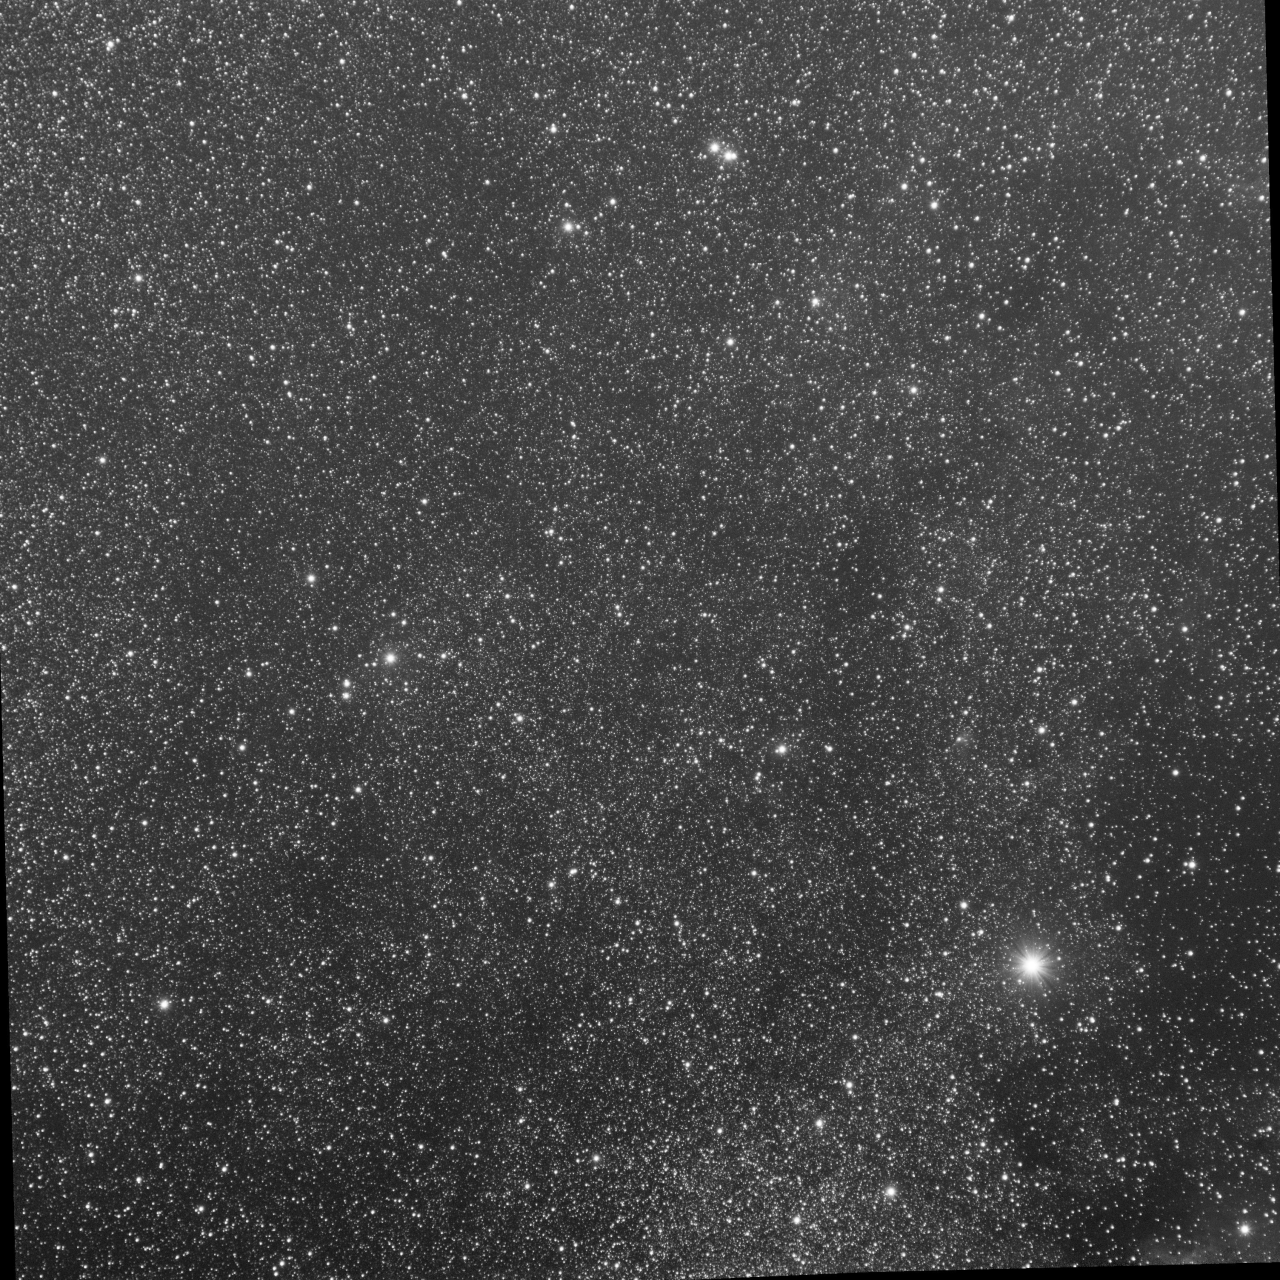 Cygnus near Sh2-115 - B